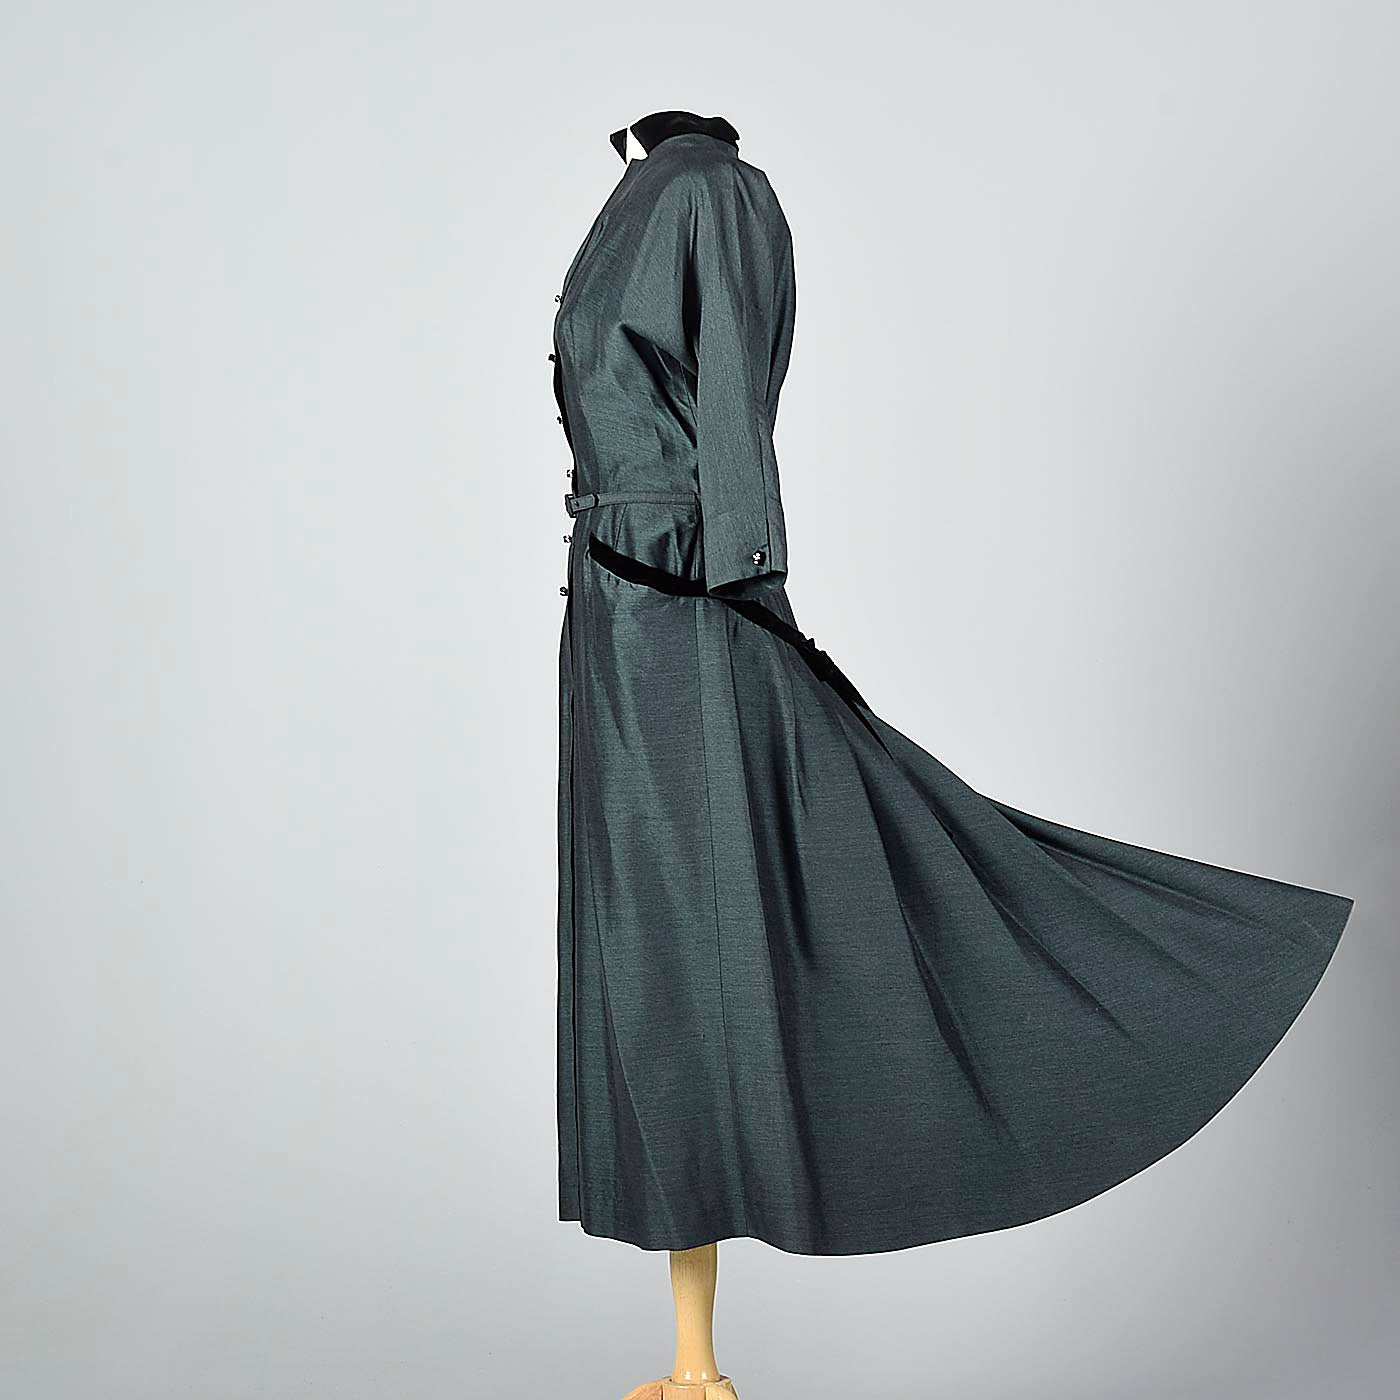 1950s Green and Black Sharksin Dress with Black Velvet Trim